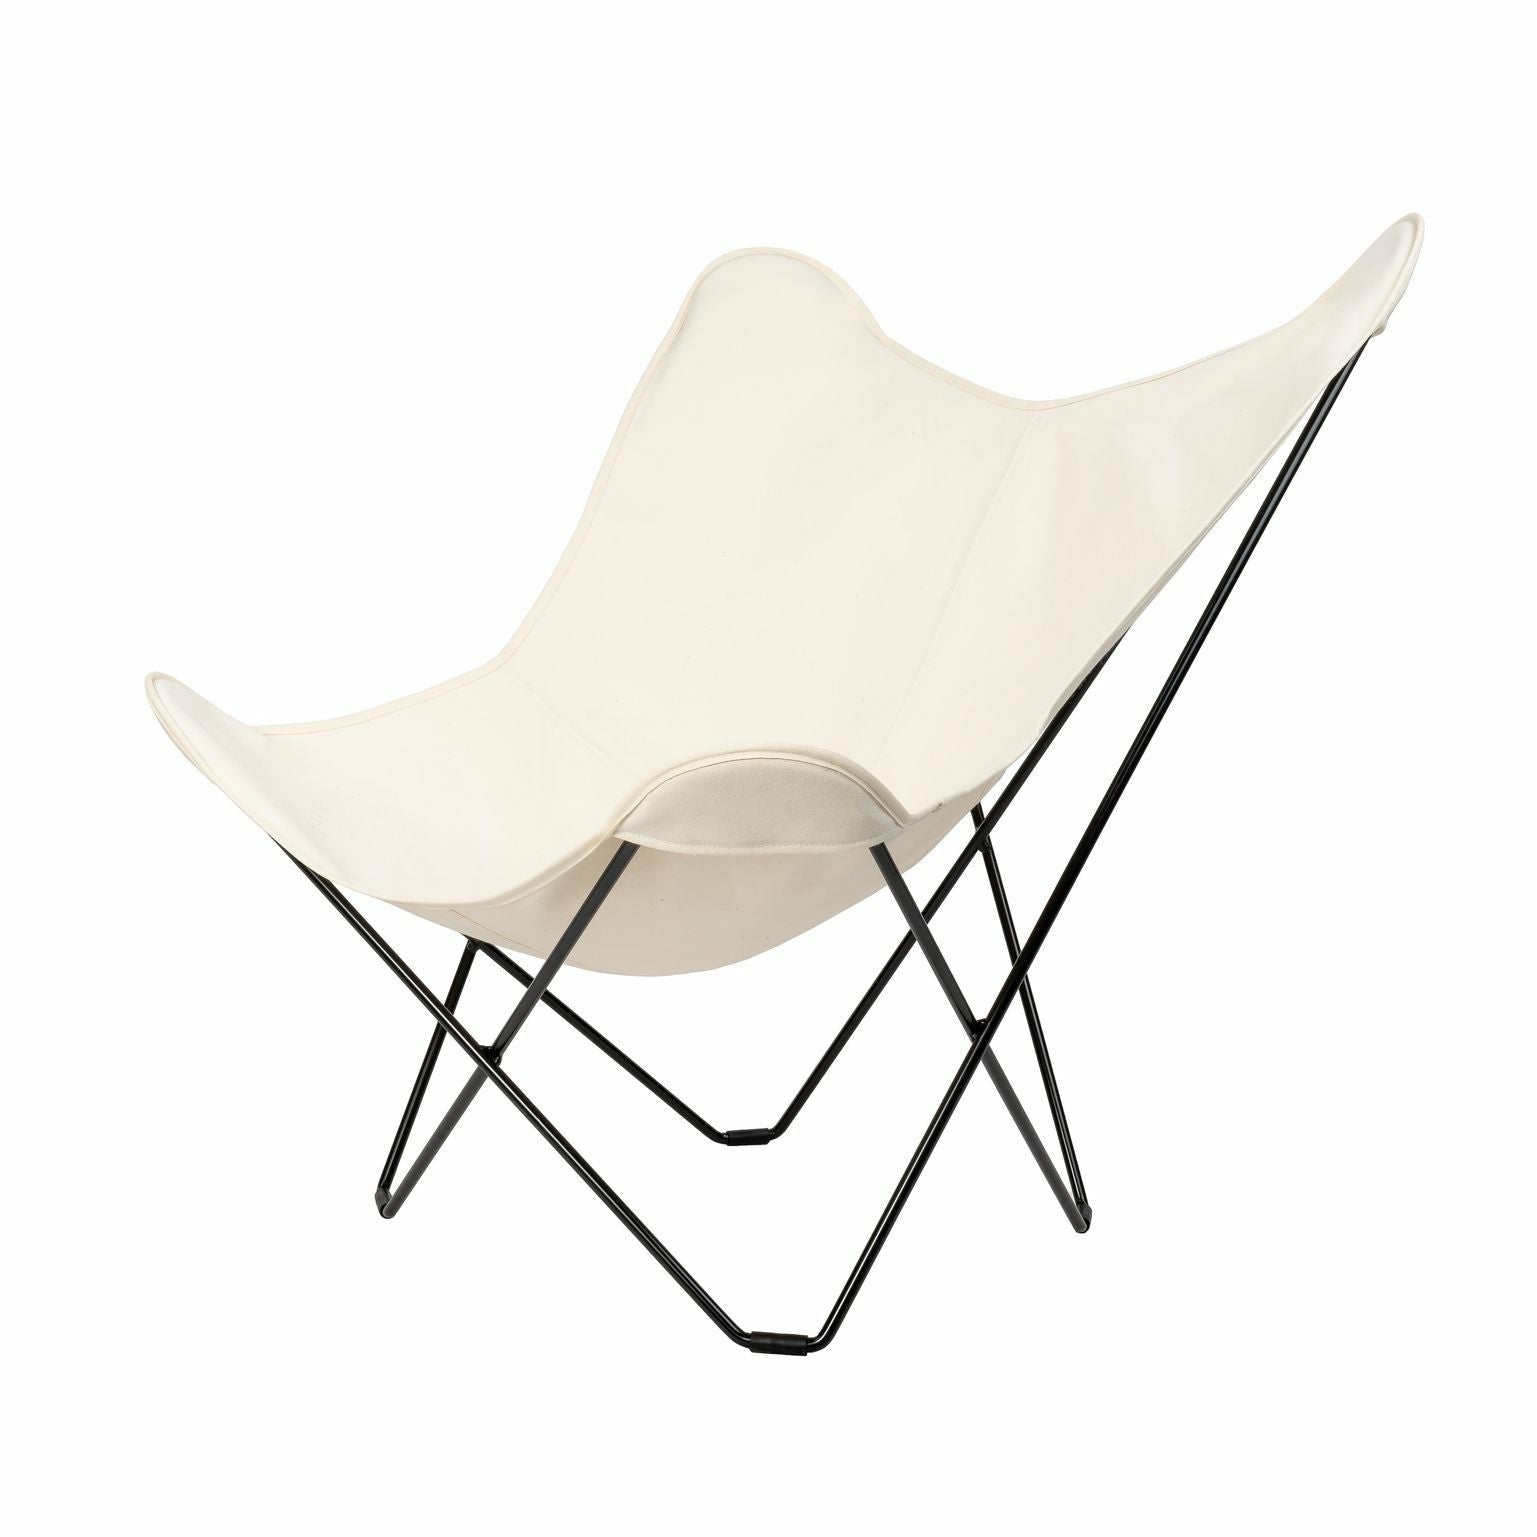 Cuero Cotton Canvas Mariposa krzesło, białe z czarną ramą